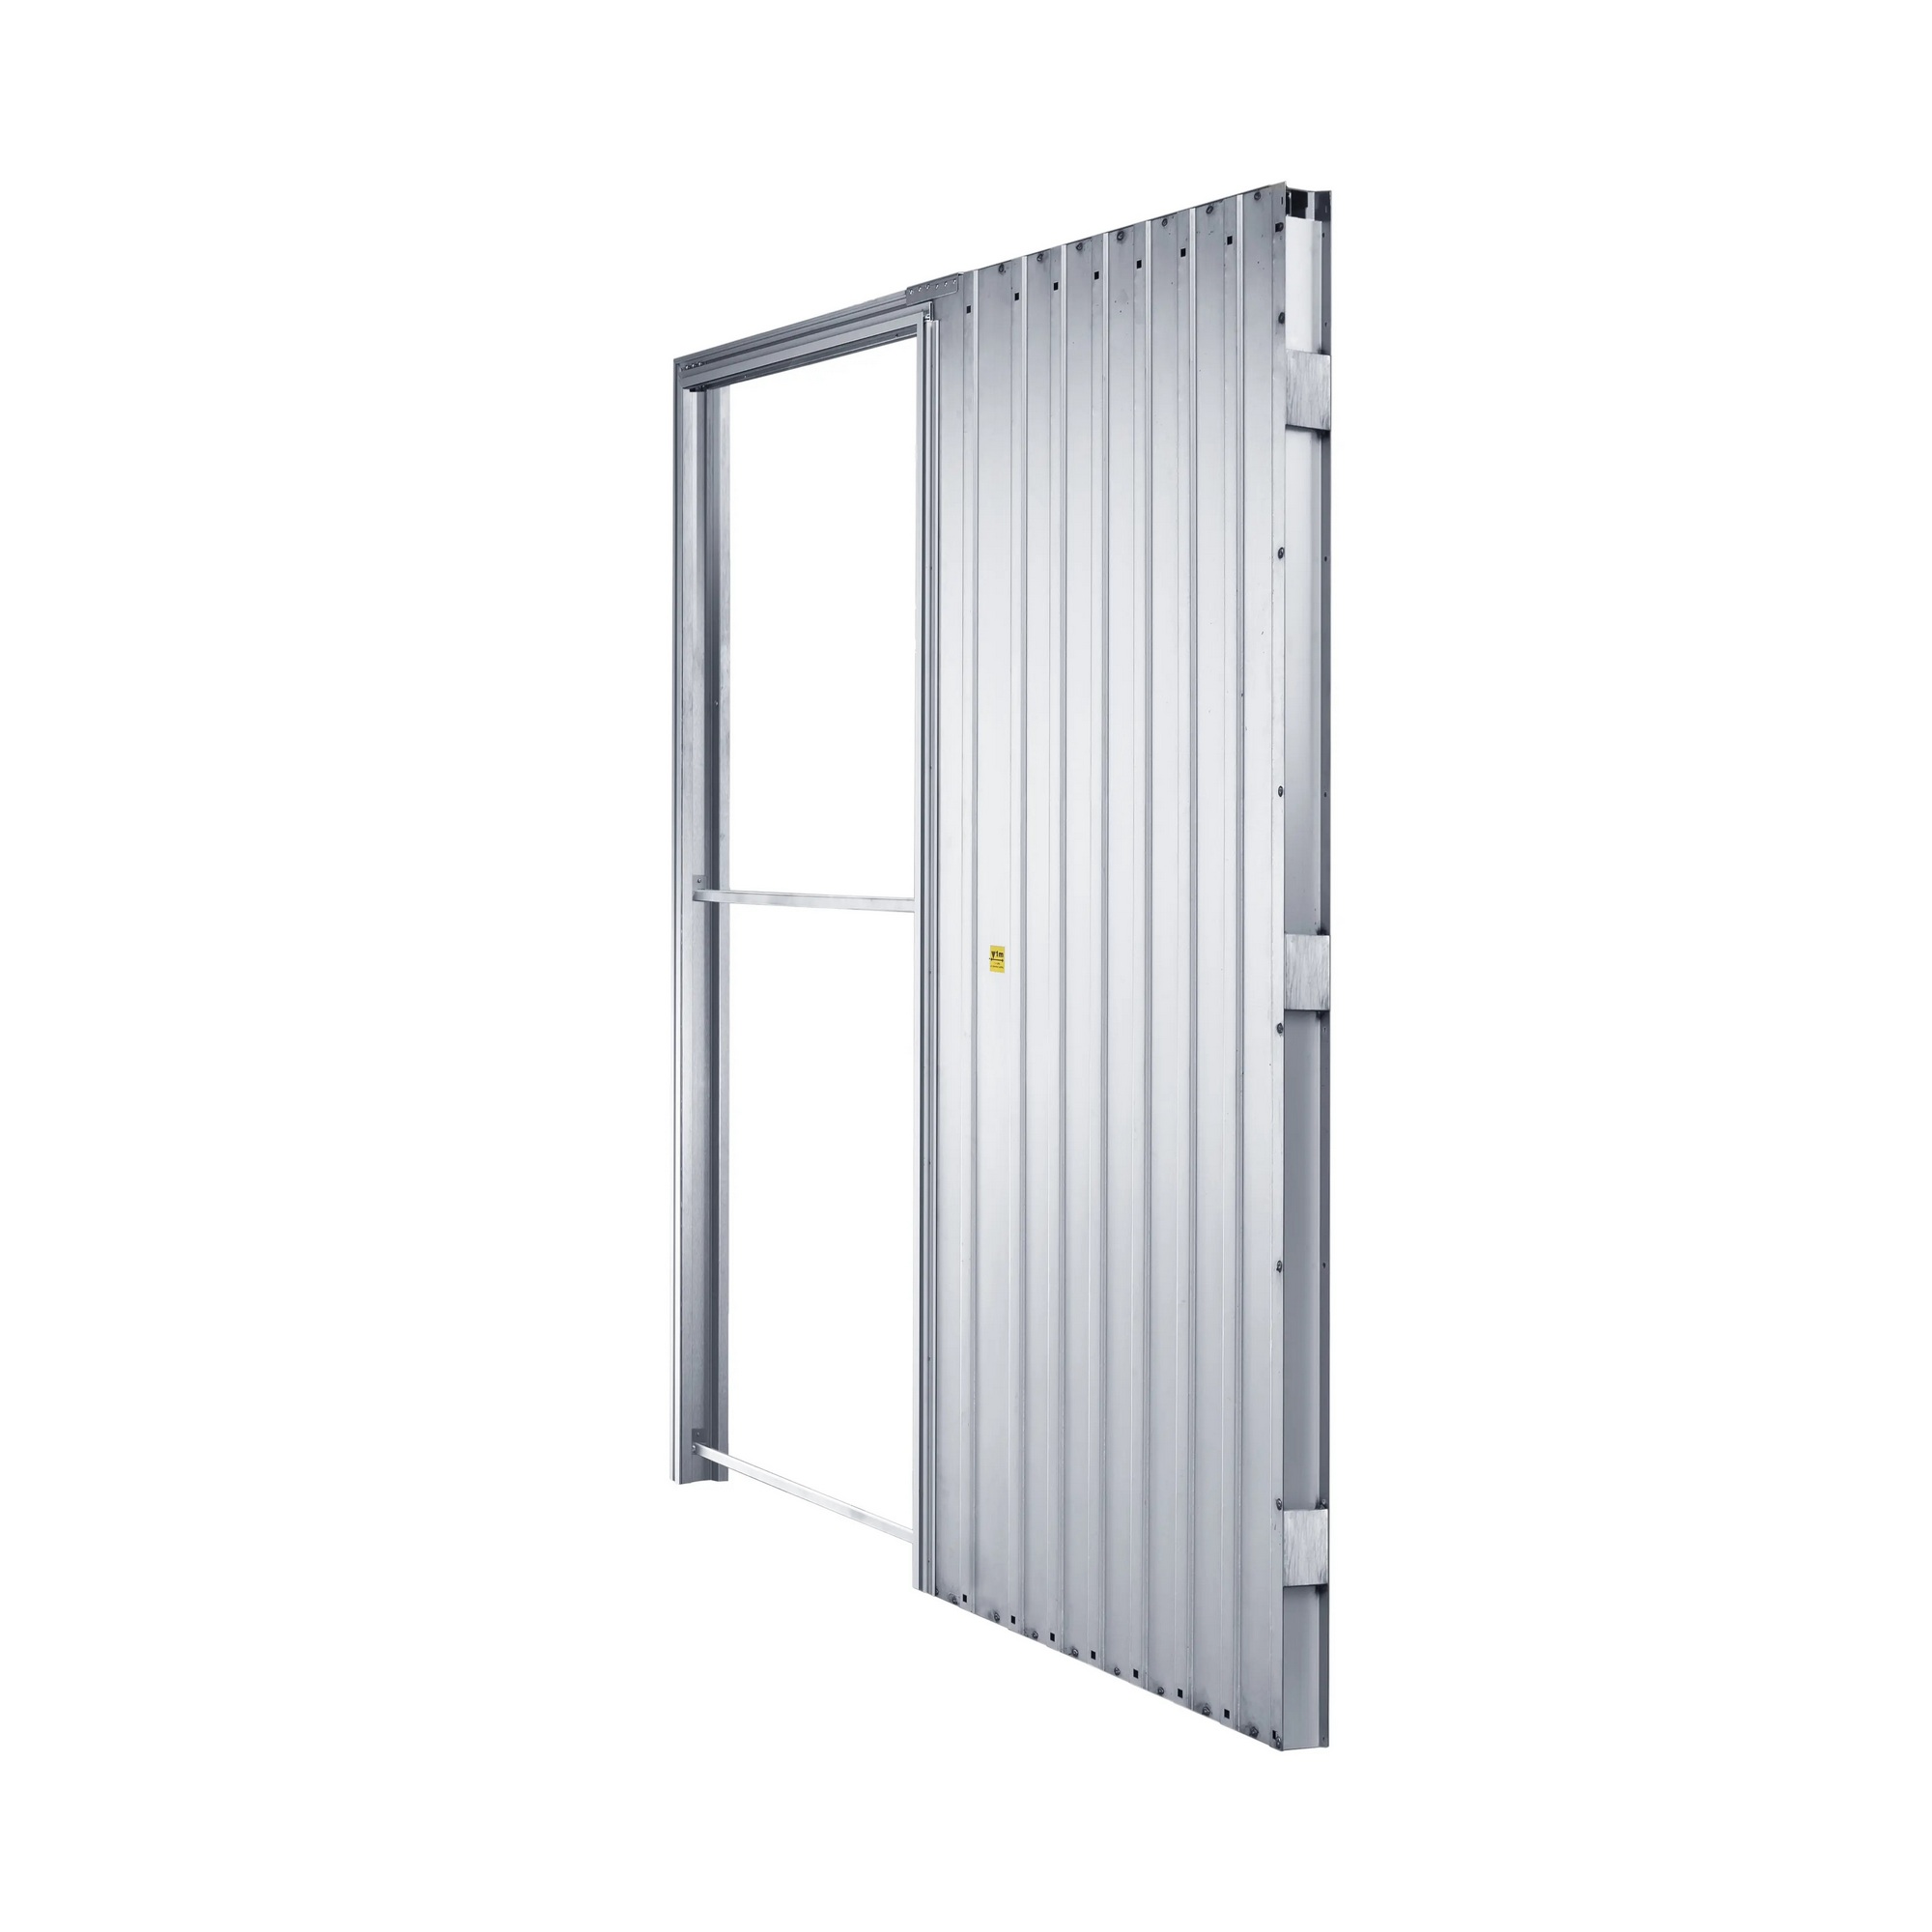 Pouzdro pro posuvné dveře JAP EMOTIVE standard 700 mm do SDK JAP